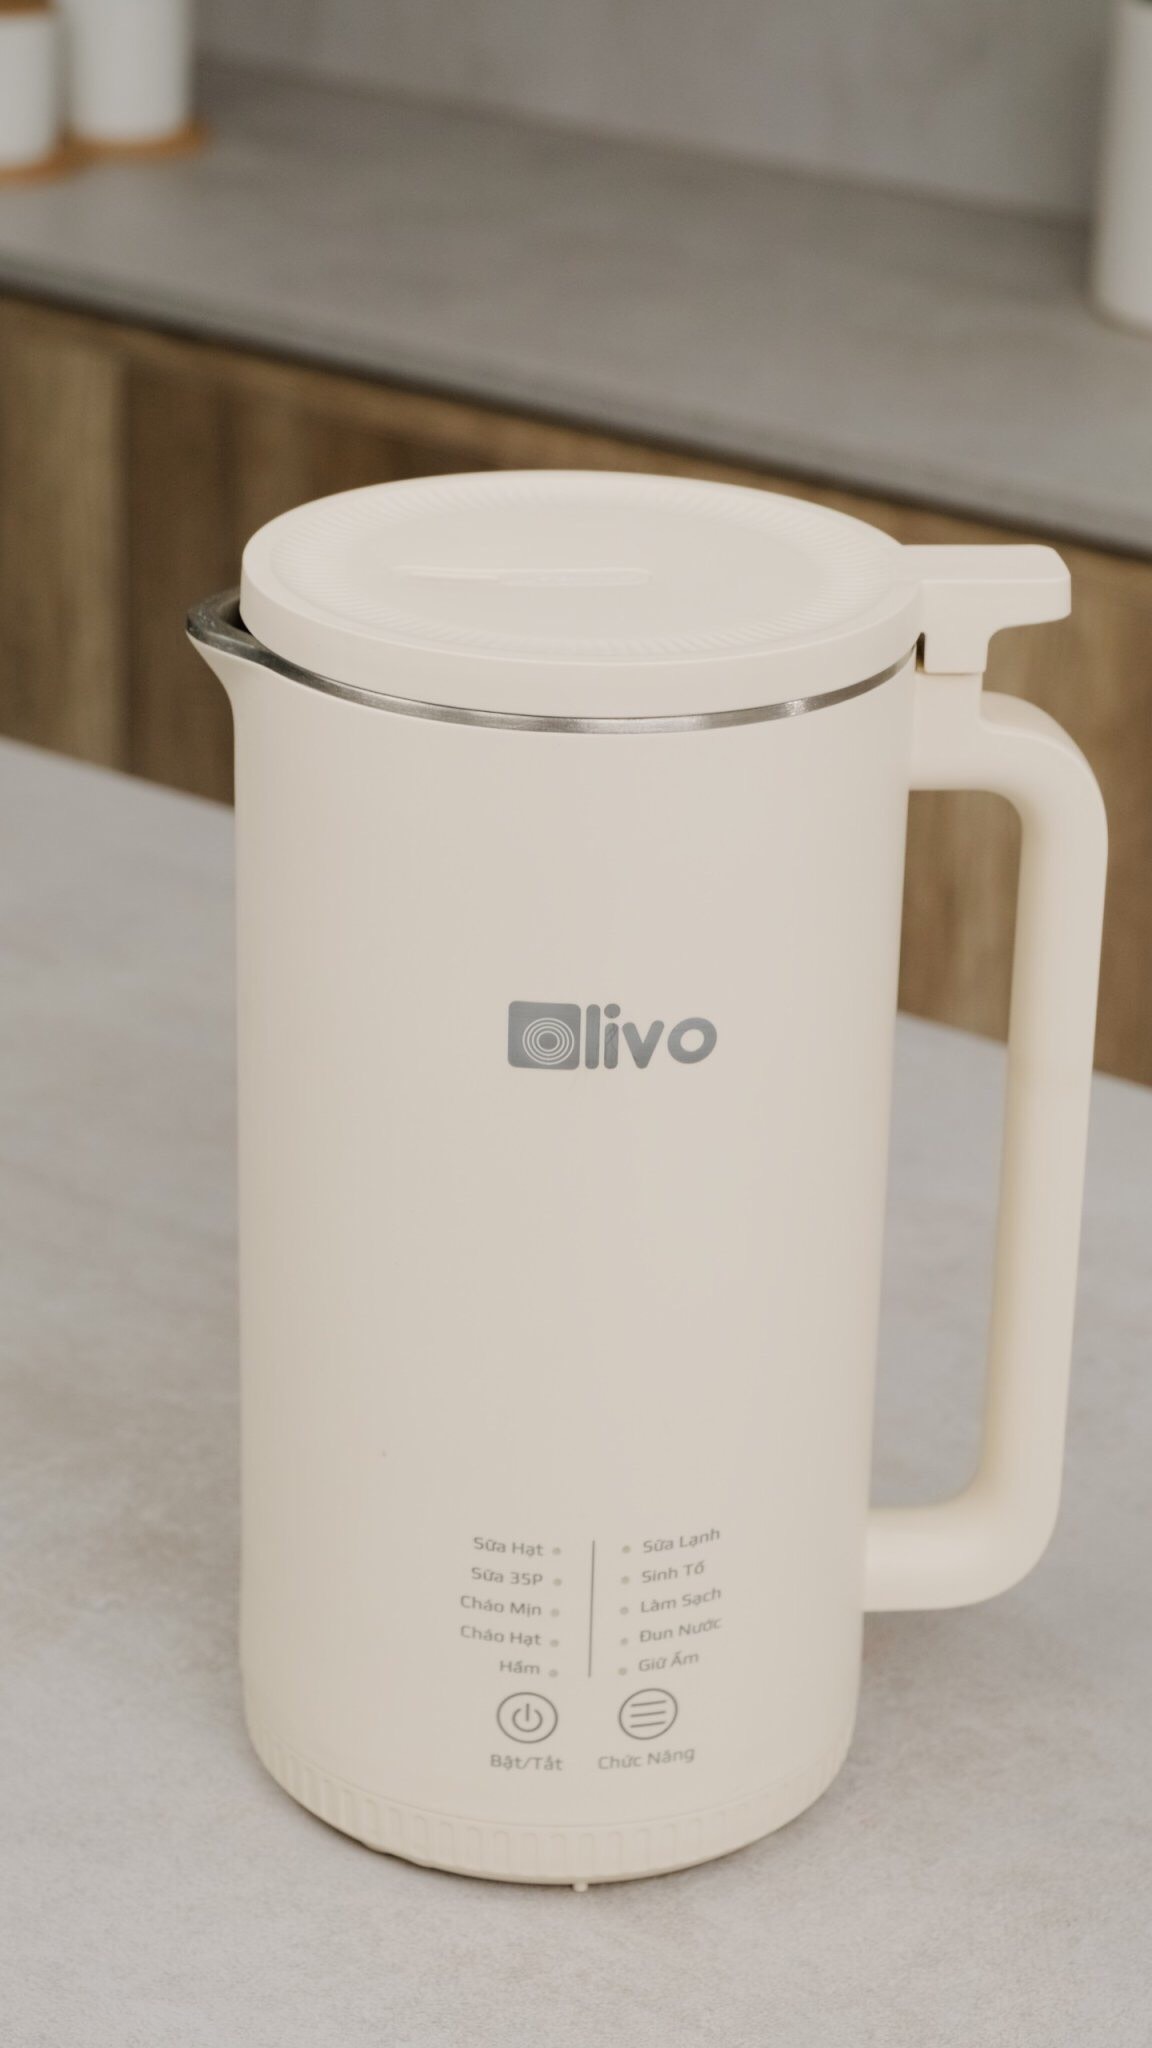 Máy làm sữa hạt OLIVO CB2000 có gì khác so với máy làm sữa hạt OLIVO CB1000?